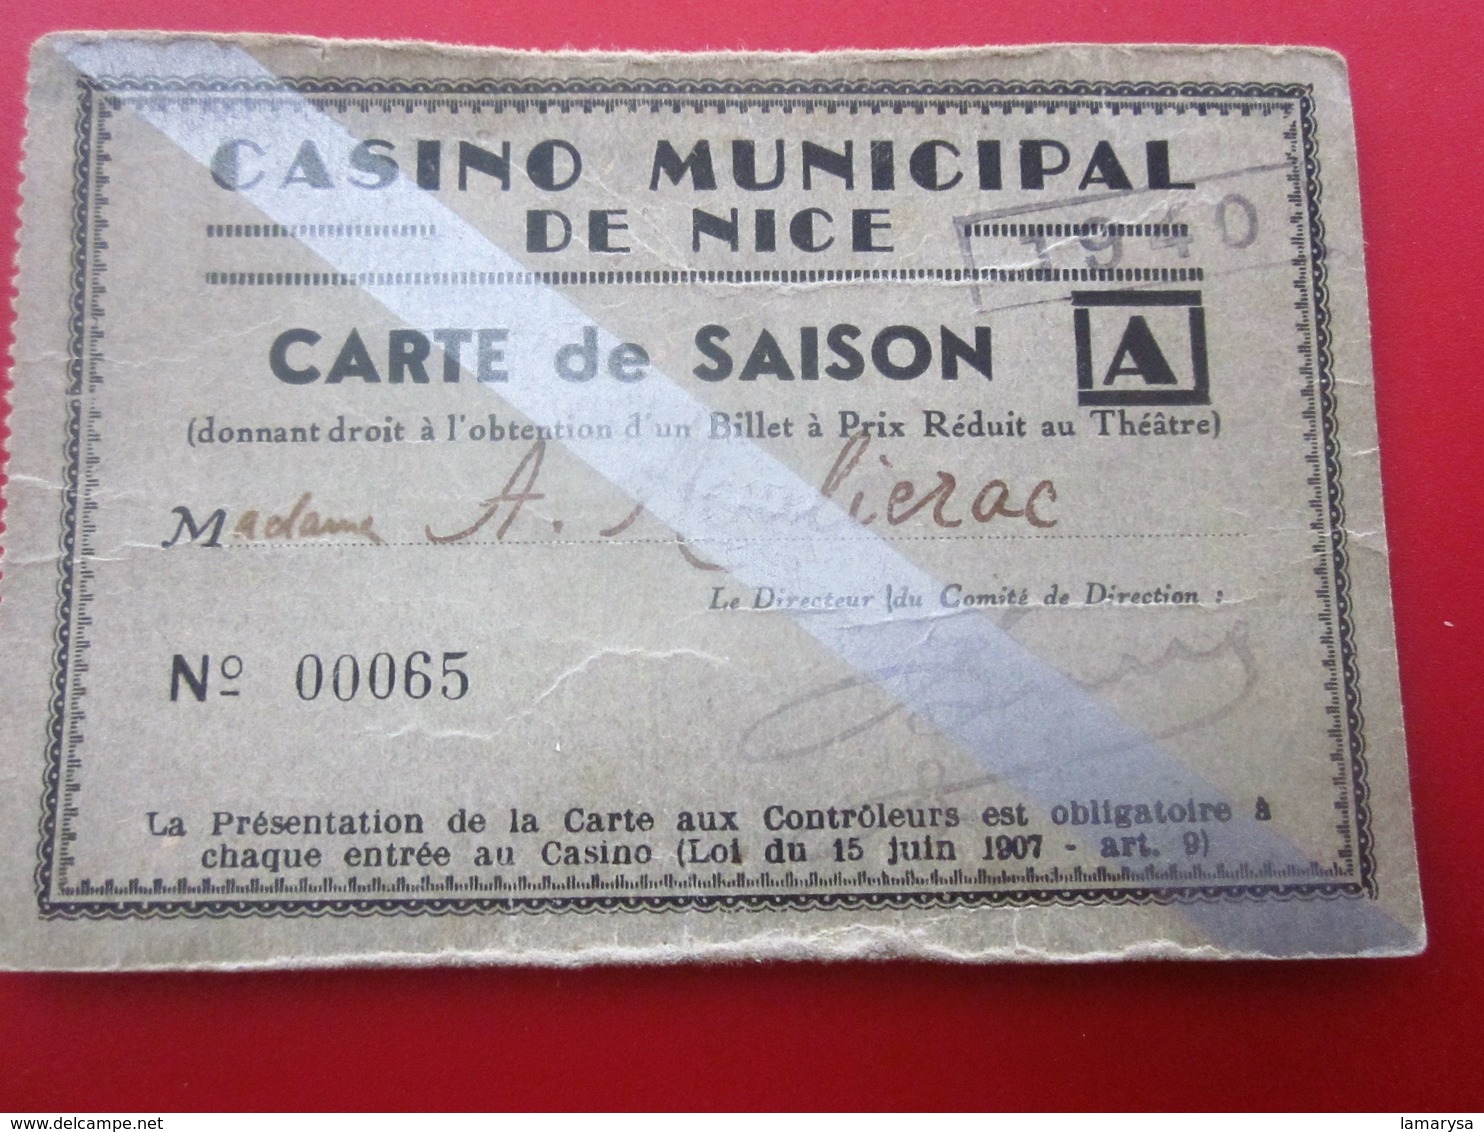 1940 WW2 CASINO MUNICIPAL NICE CARTE SAISON PRIX RÉDUIT THÉÂTRE Ticket Billet Entrée Entry Entrance-Biglietto D'ingresso - Eintrittskarten